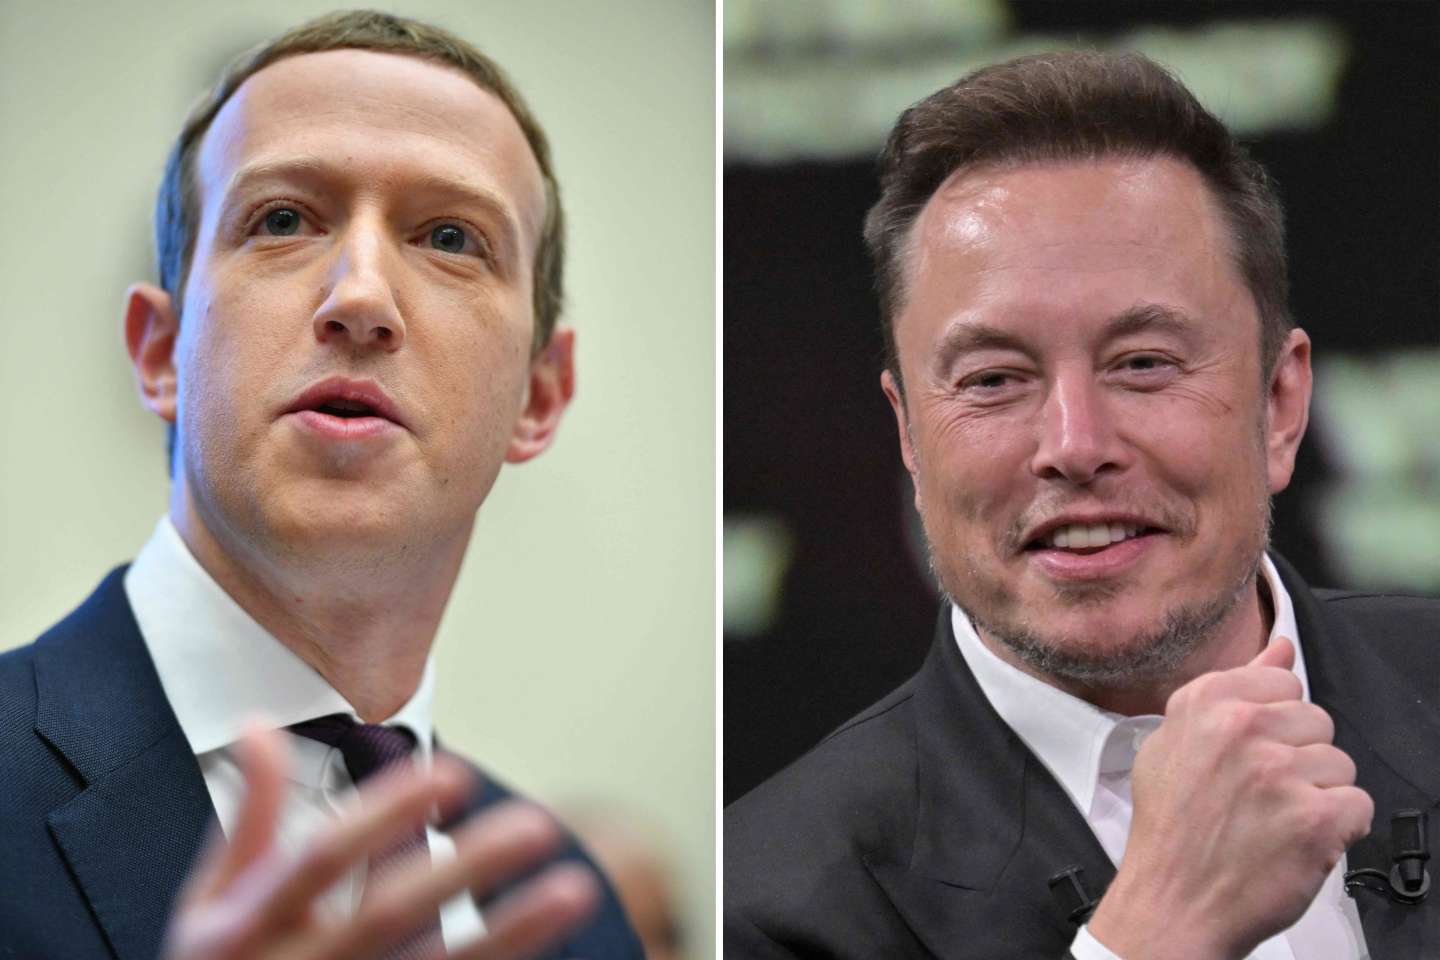 Elon Musk et Mark Zuckerberg se défient mutuellement à un combat de MMA